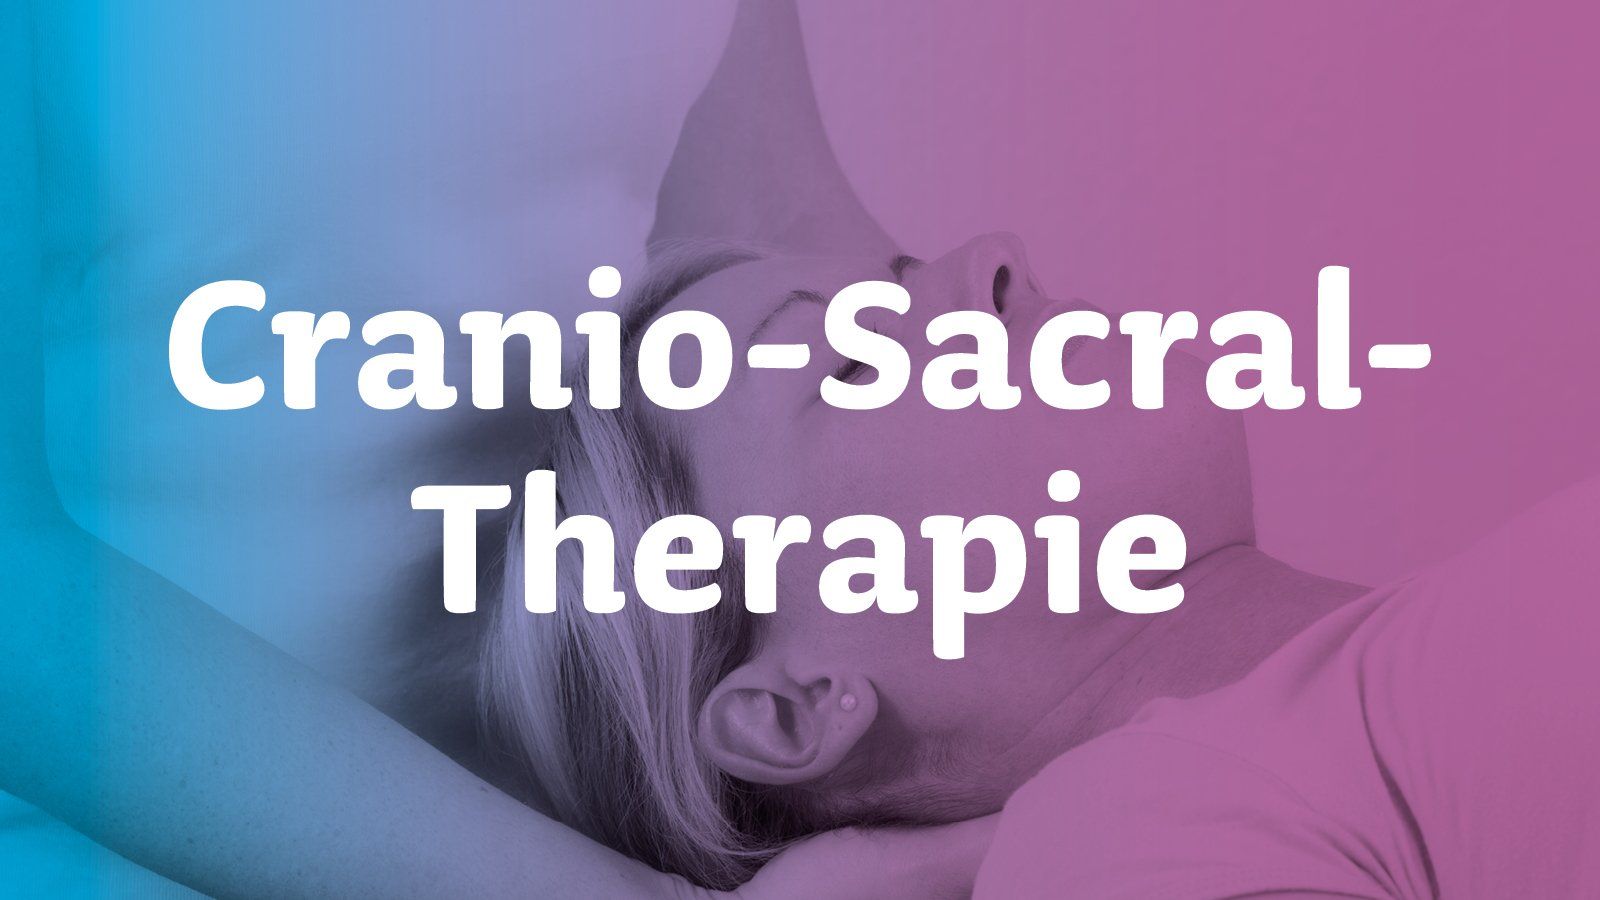 Cranio-Sacral Therapie